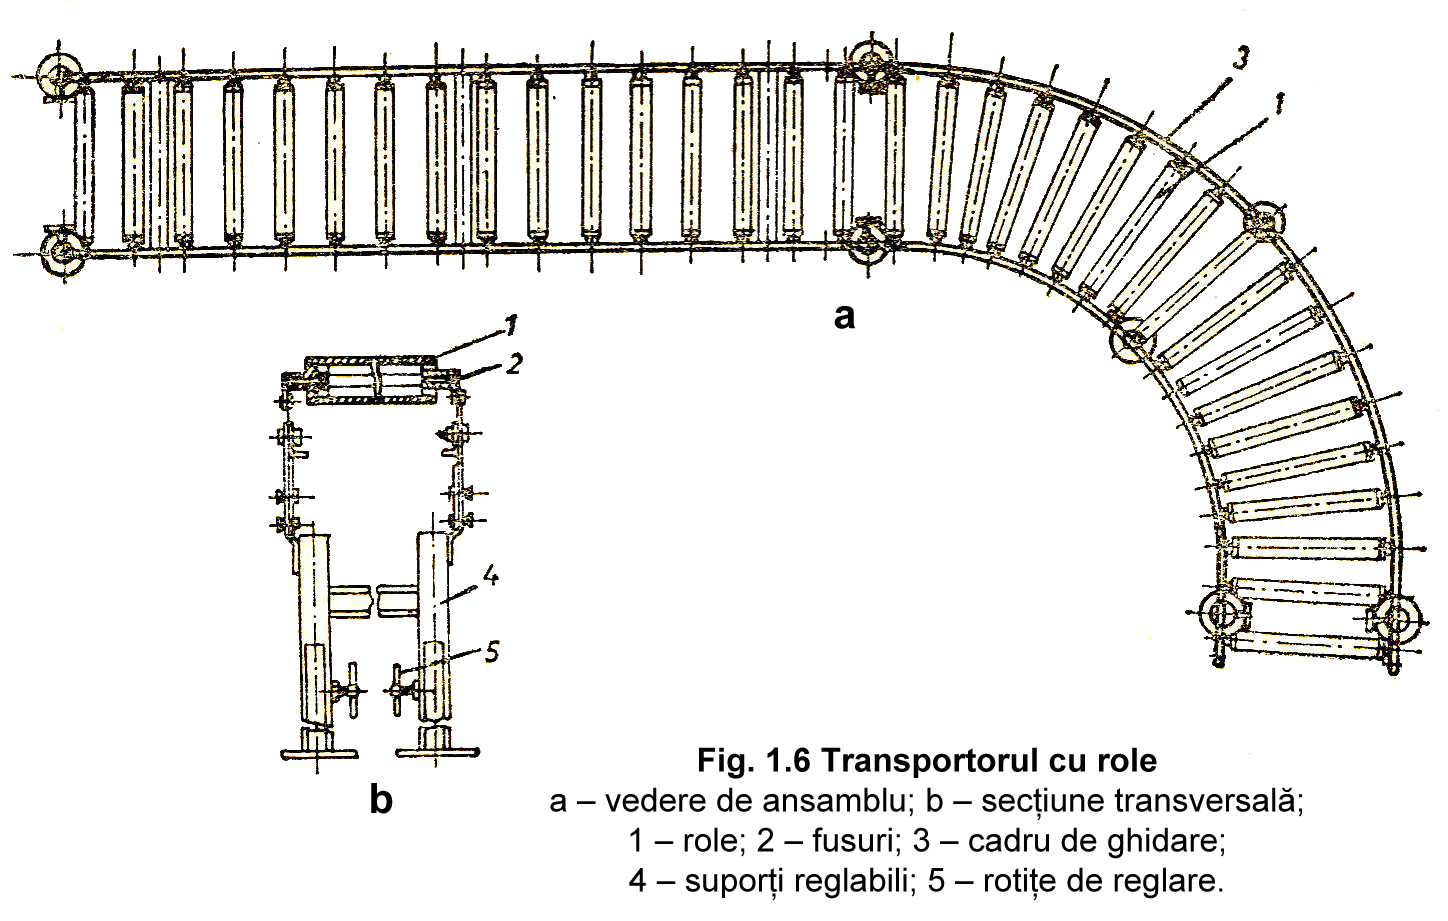 Fig. 1.6 Transportorul cu role